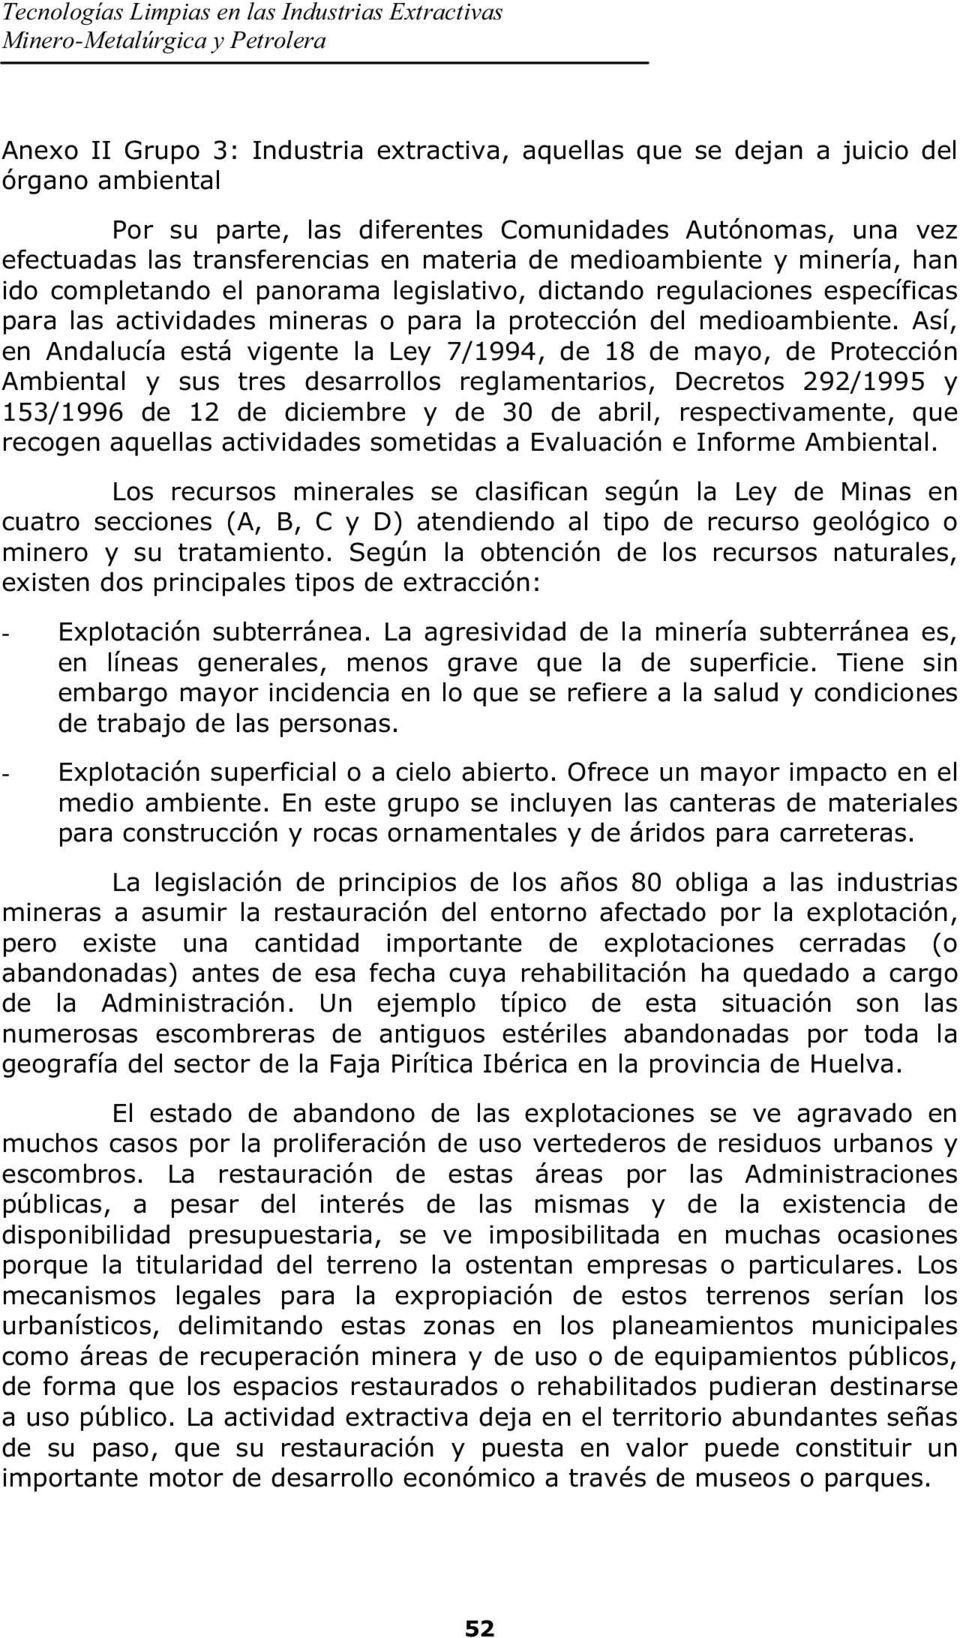 Así, en Andalucía está vigente la Ley 7/1994, de 18 de mayo, de Protección Ambiental y sus tres desarrollos reglamentarios, Decretos 292/1995 y 153/1996 de 12 de diciembre y de 30 de abril,